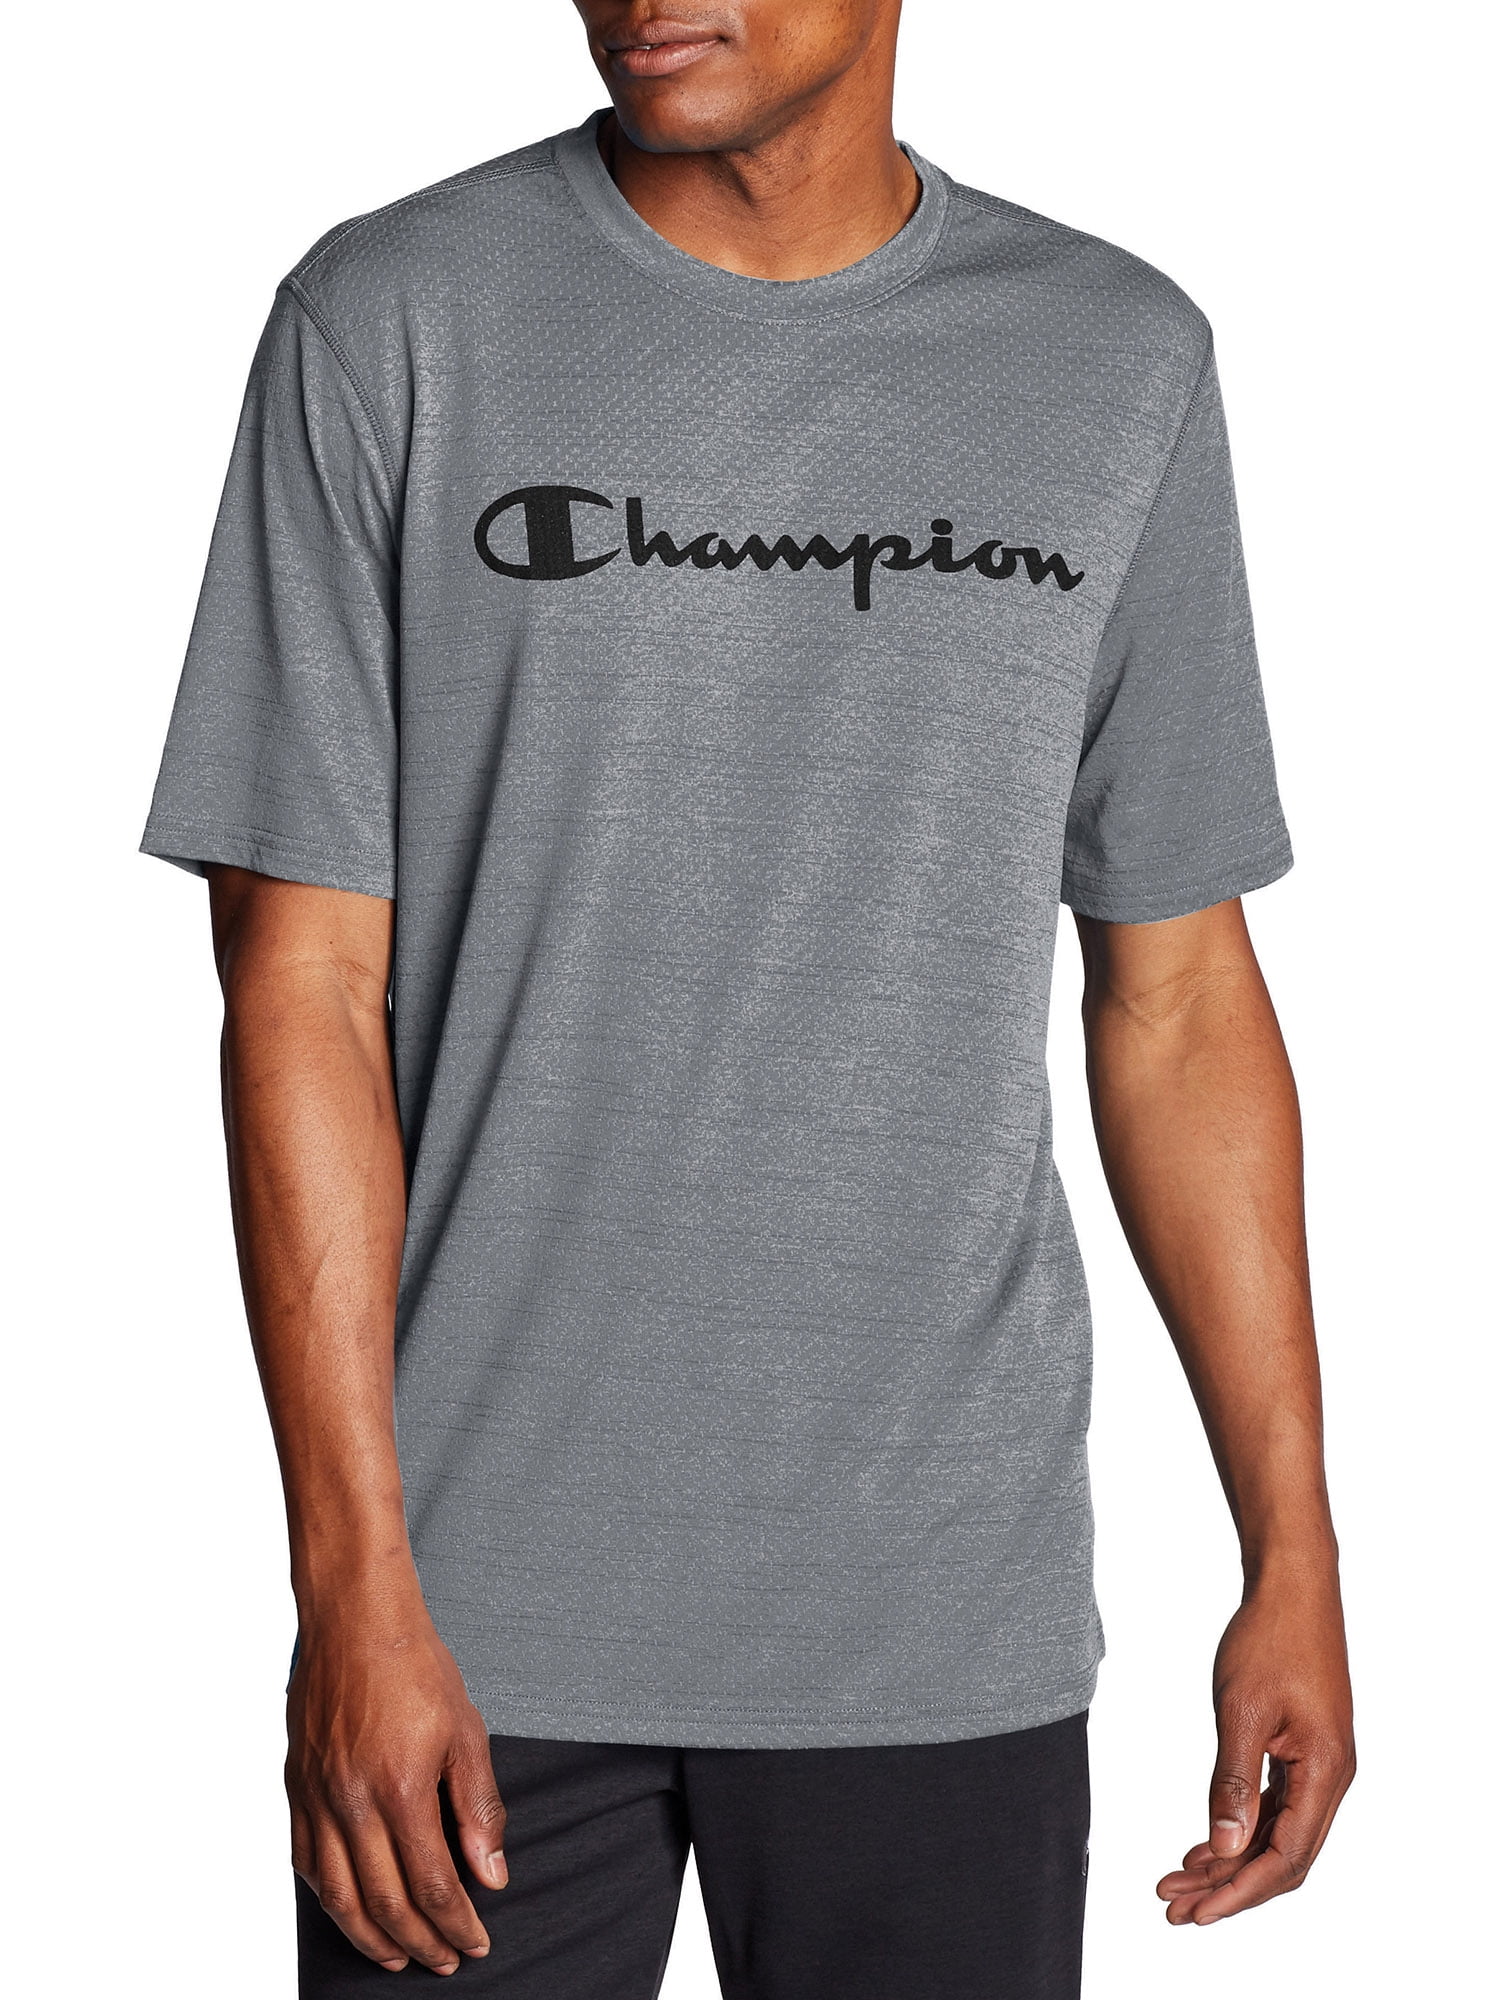 champion duo dry shirt